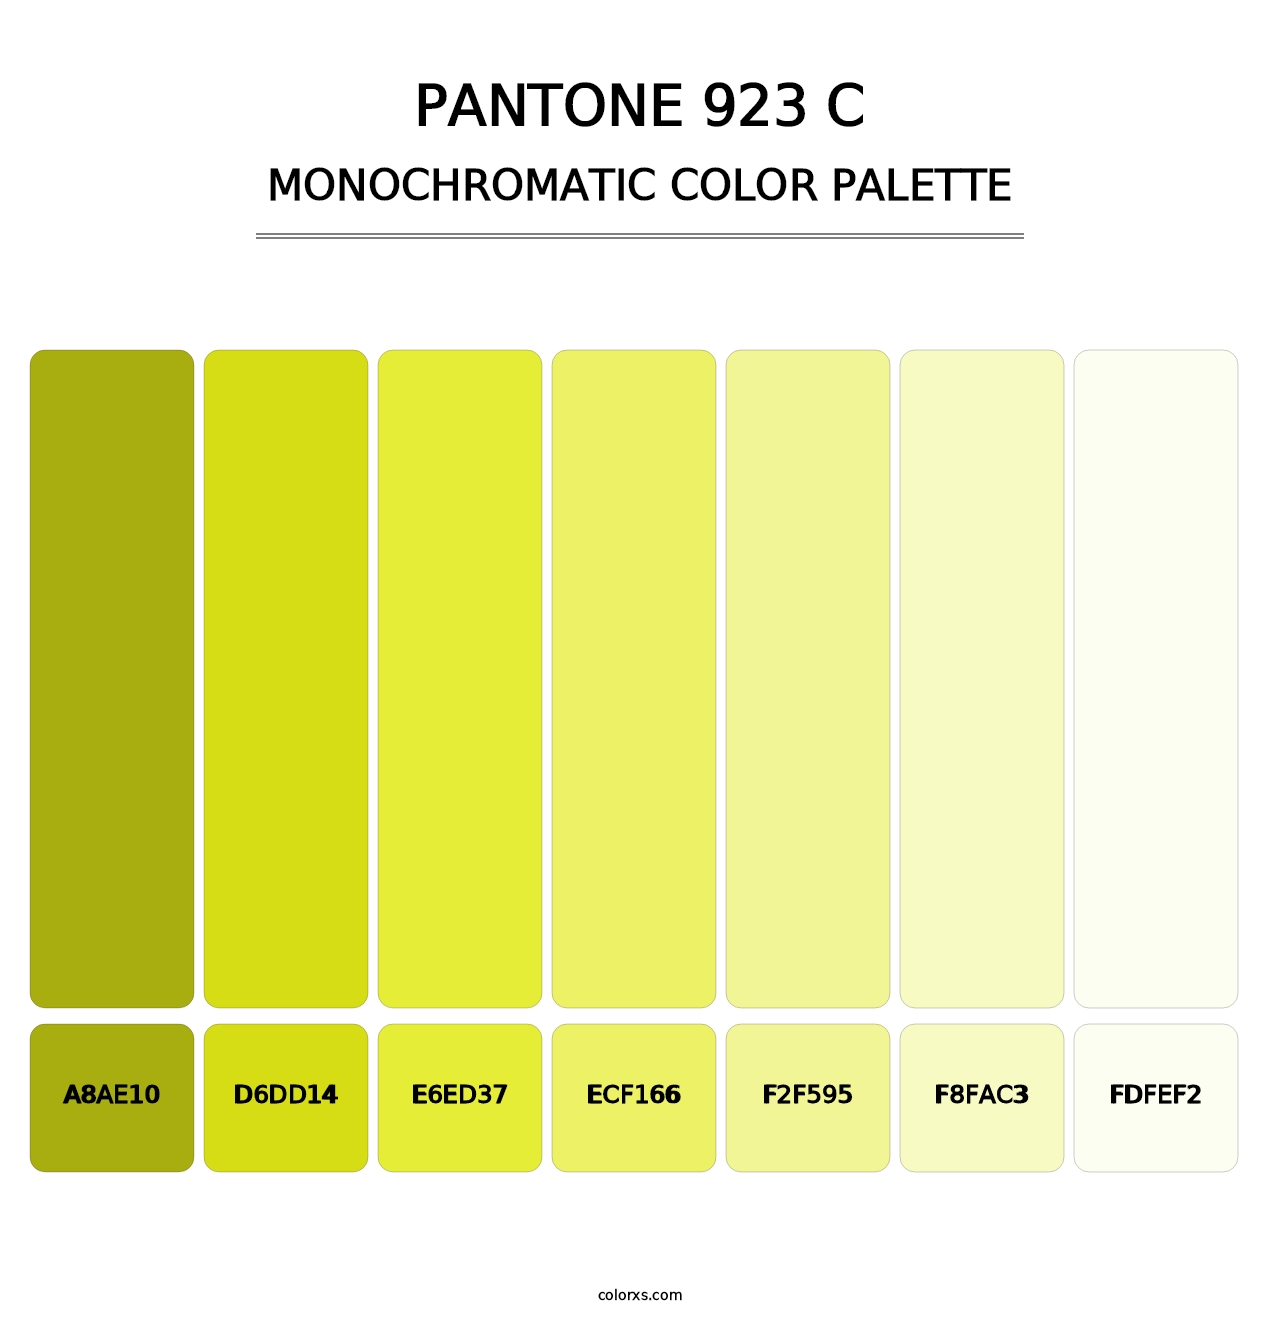 PANTONE 923 C - Monochromatic Color Palette